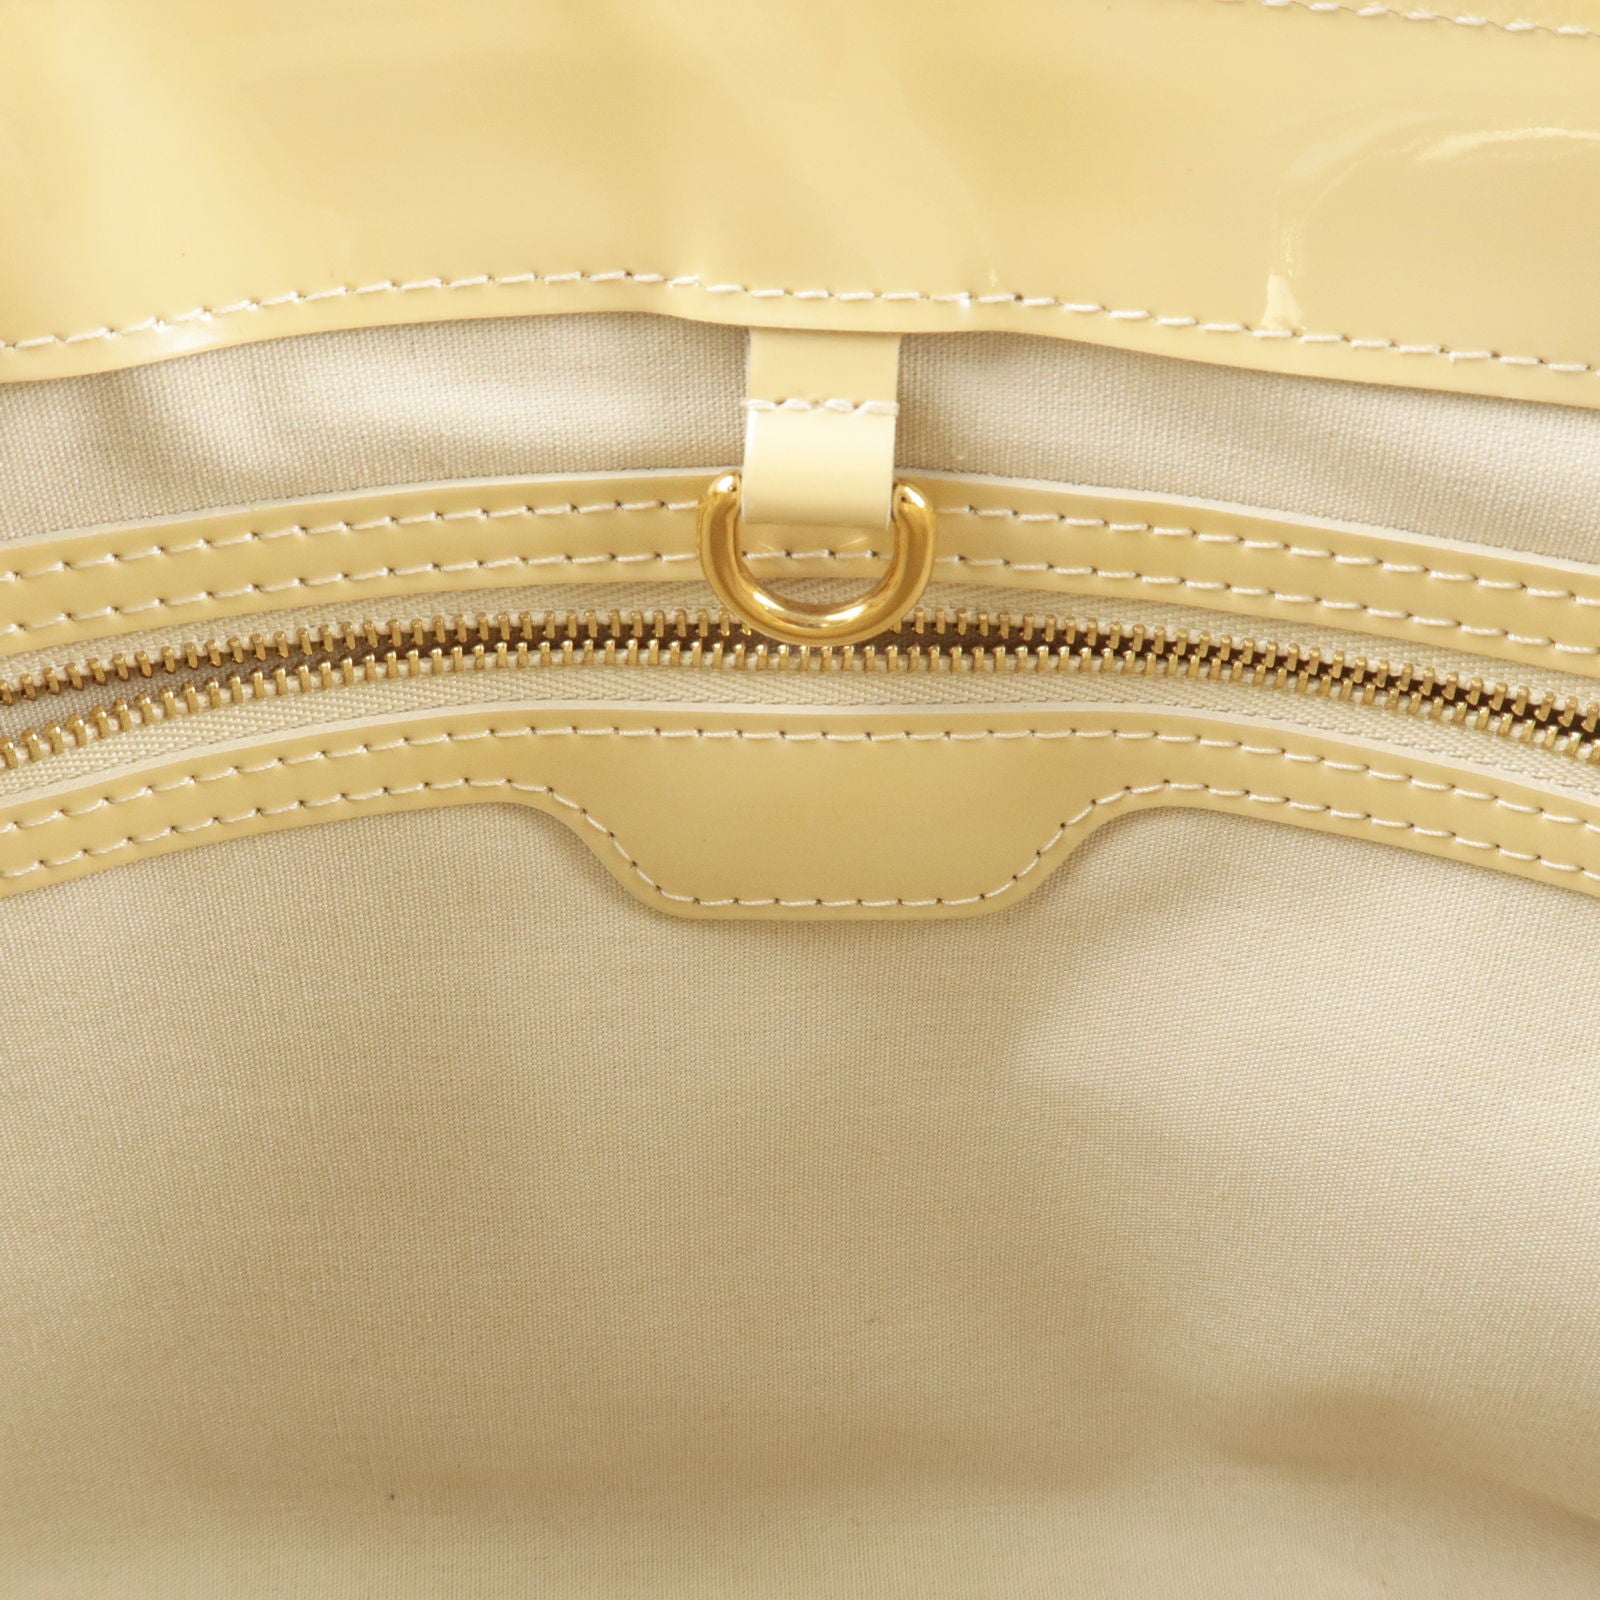 Louis-Vuitton-Monogram-Vernis-Wilshire-PM-Hand-Bag-Broncorail